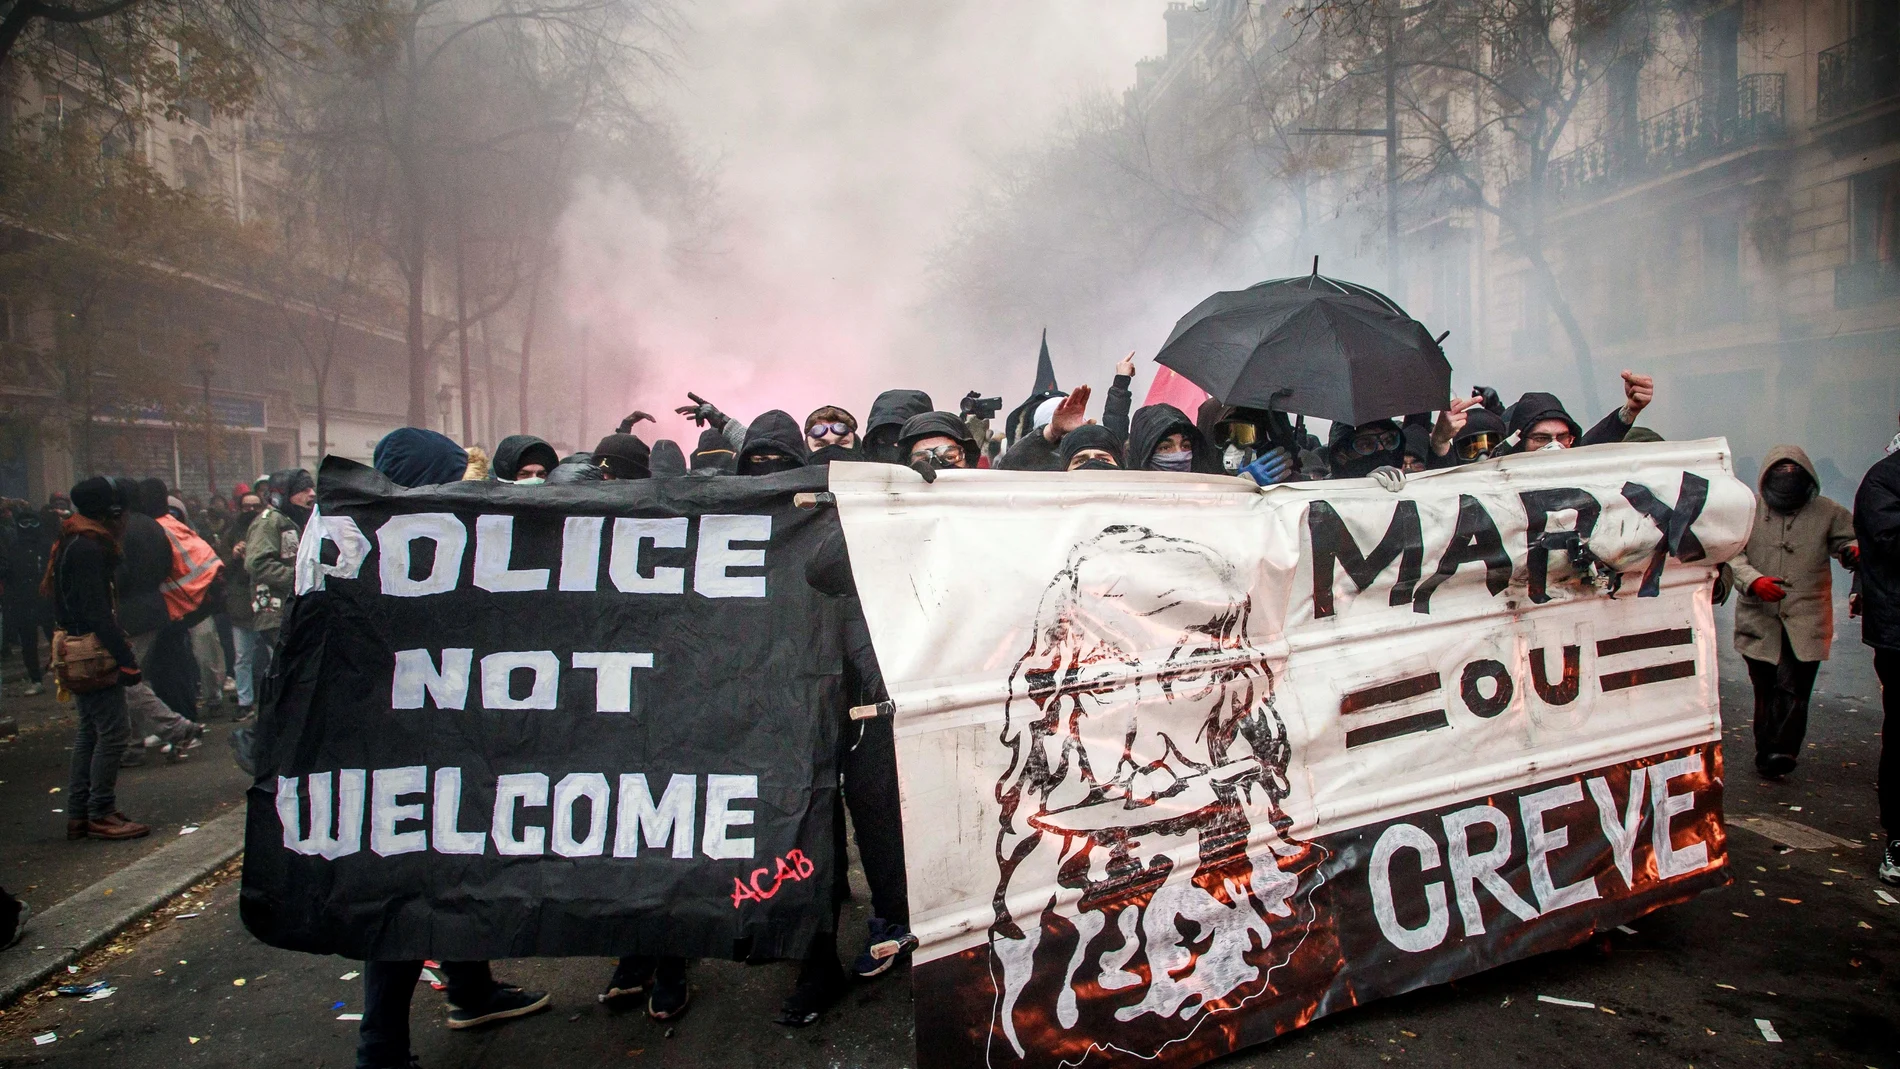 En las recientes protestas en Francia se han visto pancartas como ésta, en la que dice: "Marx o huelga"